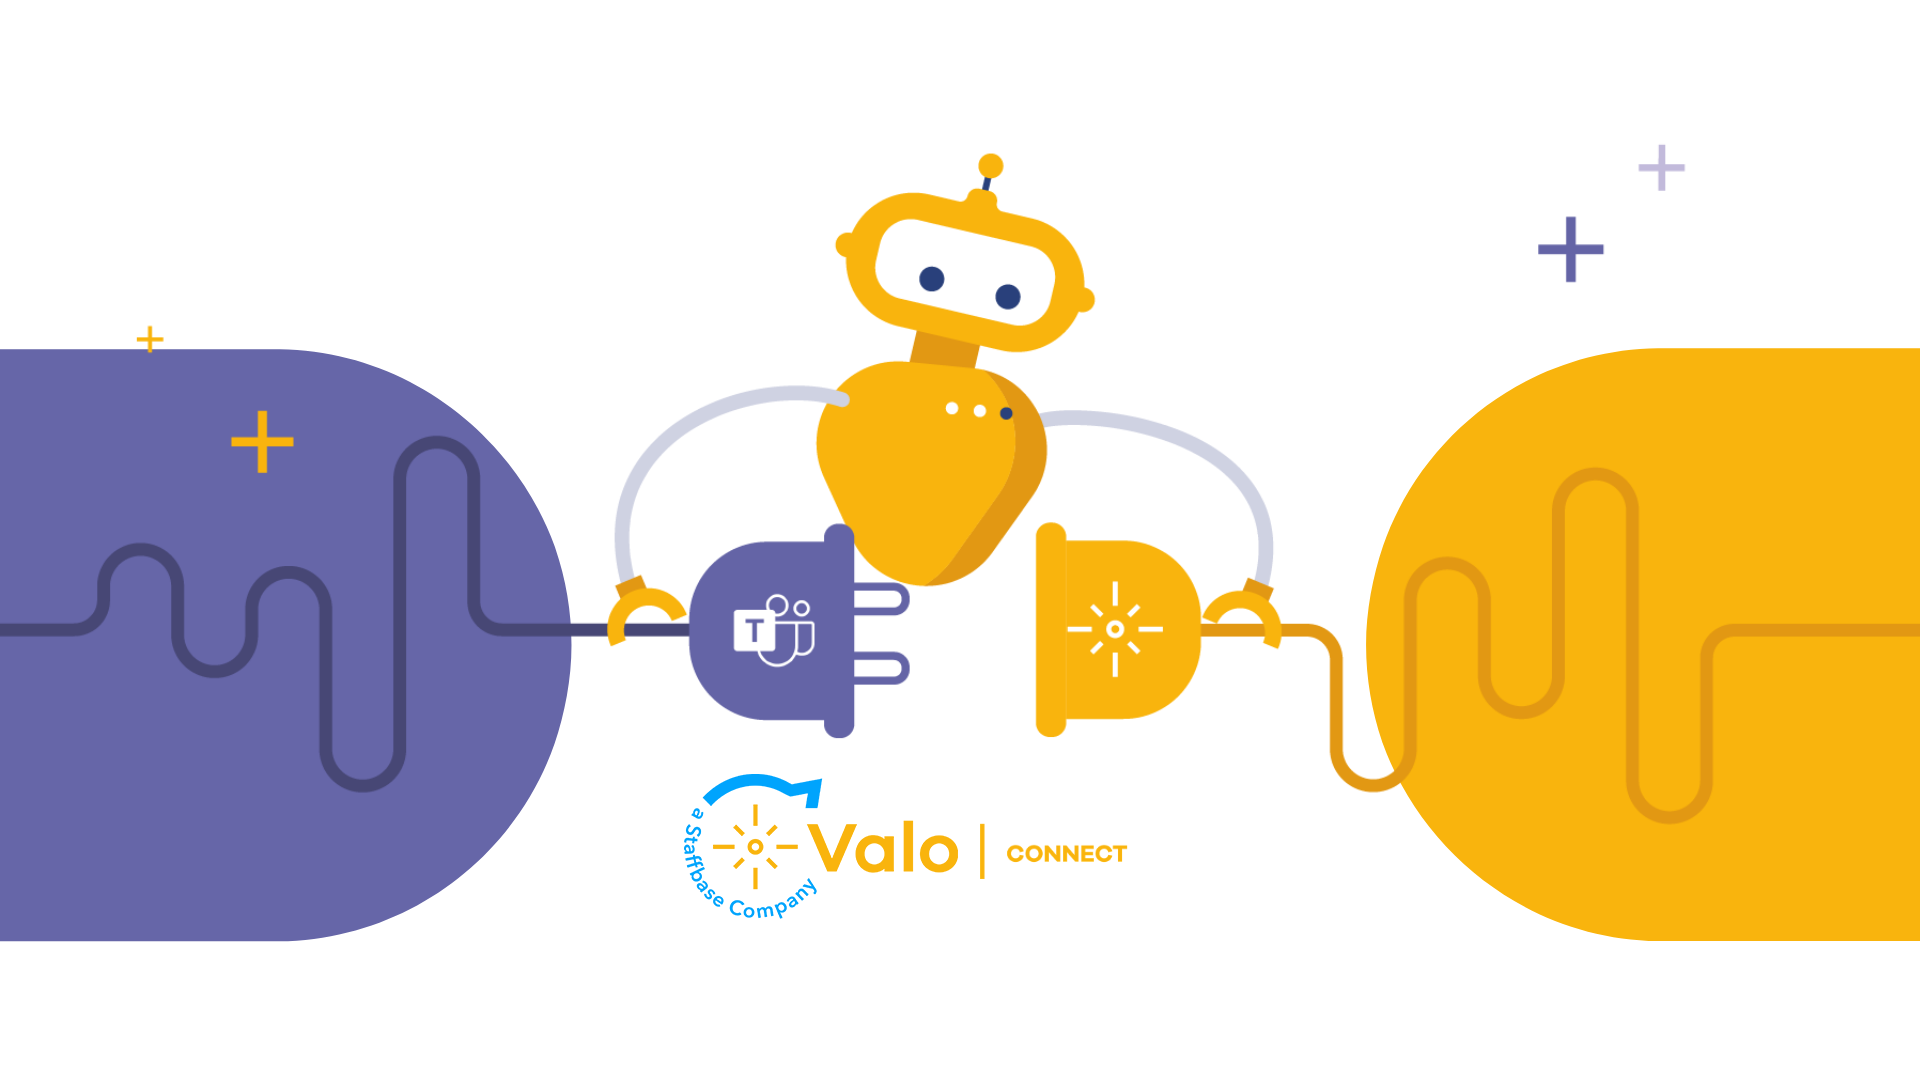 GABO: Valo Connect